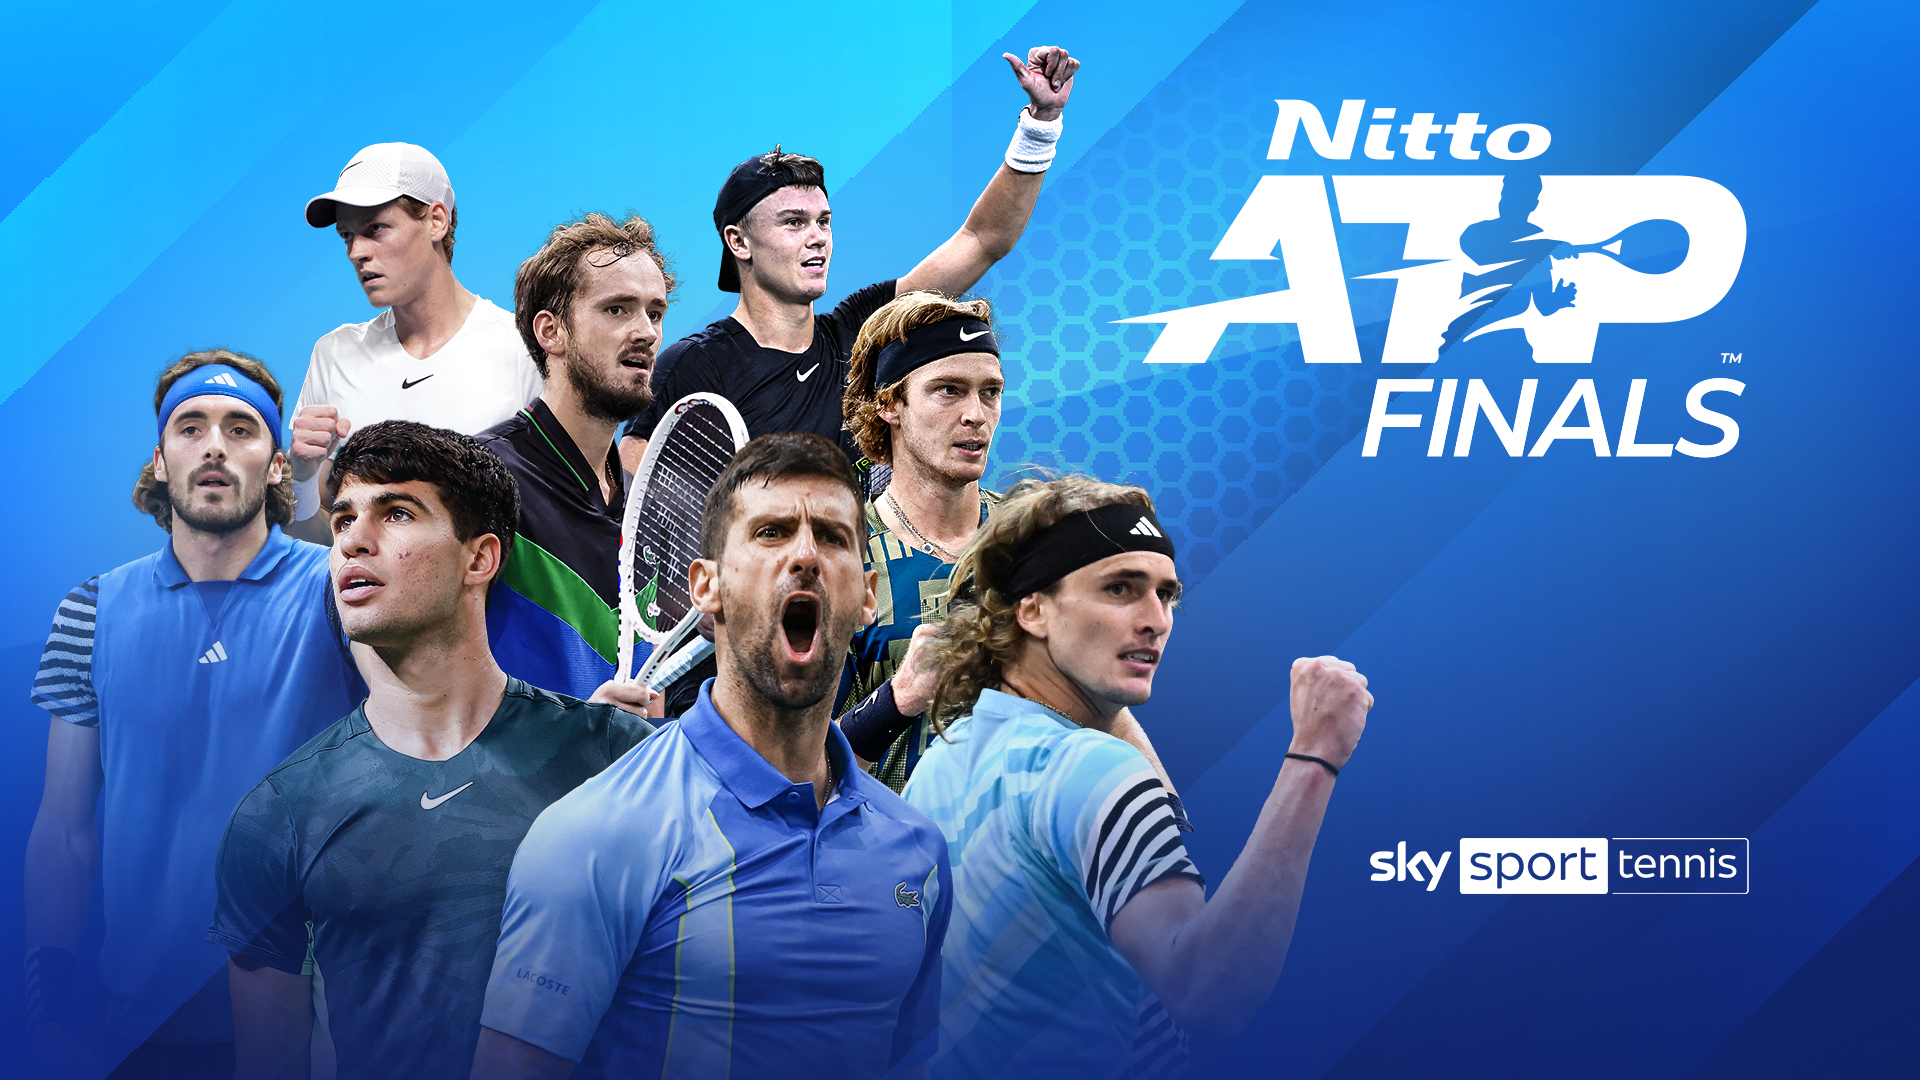 Wird Alexander Zverev erneut Weltmeister? Die Nitto ATP Finals in Turin live und ..